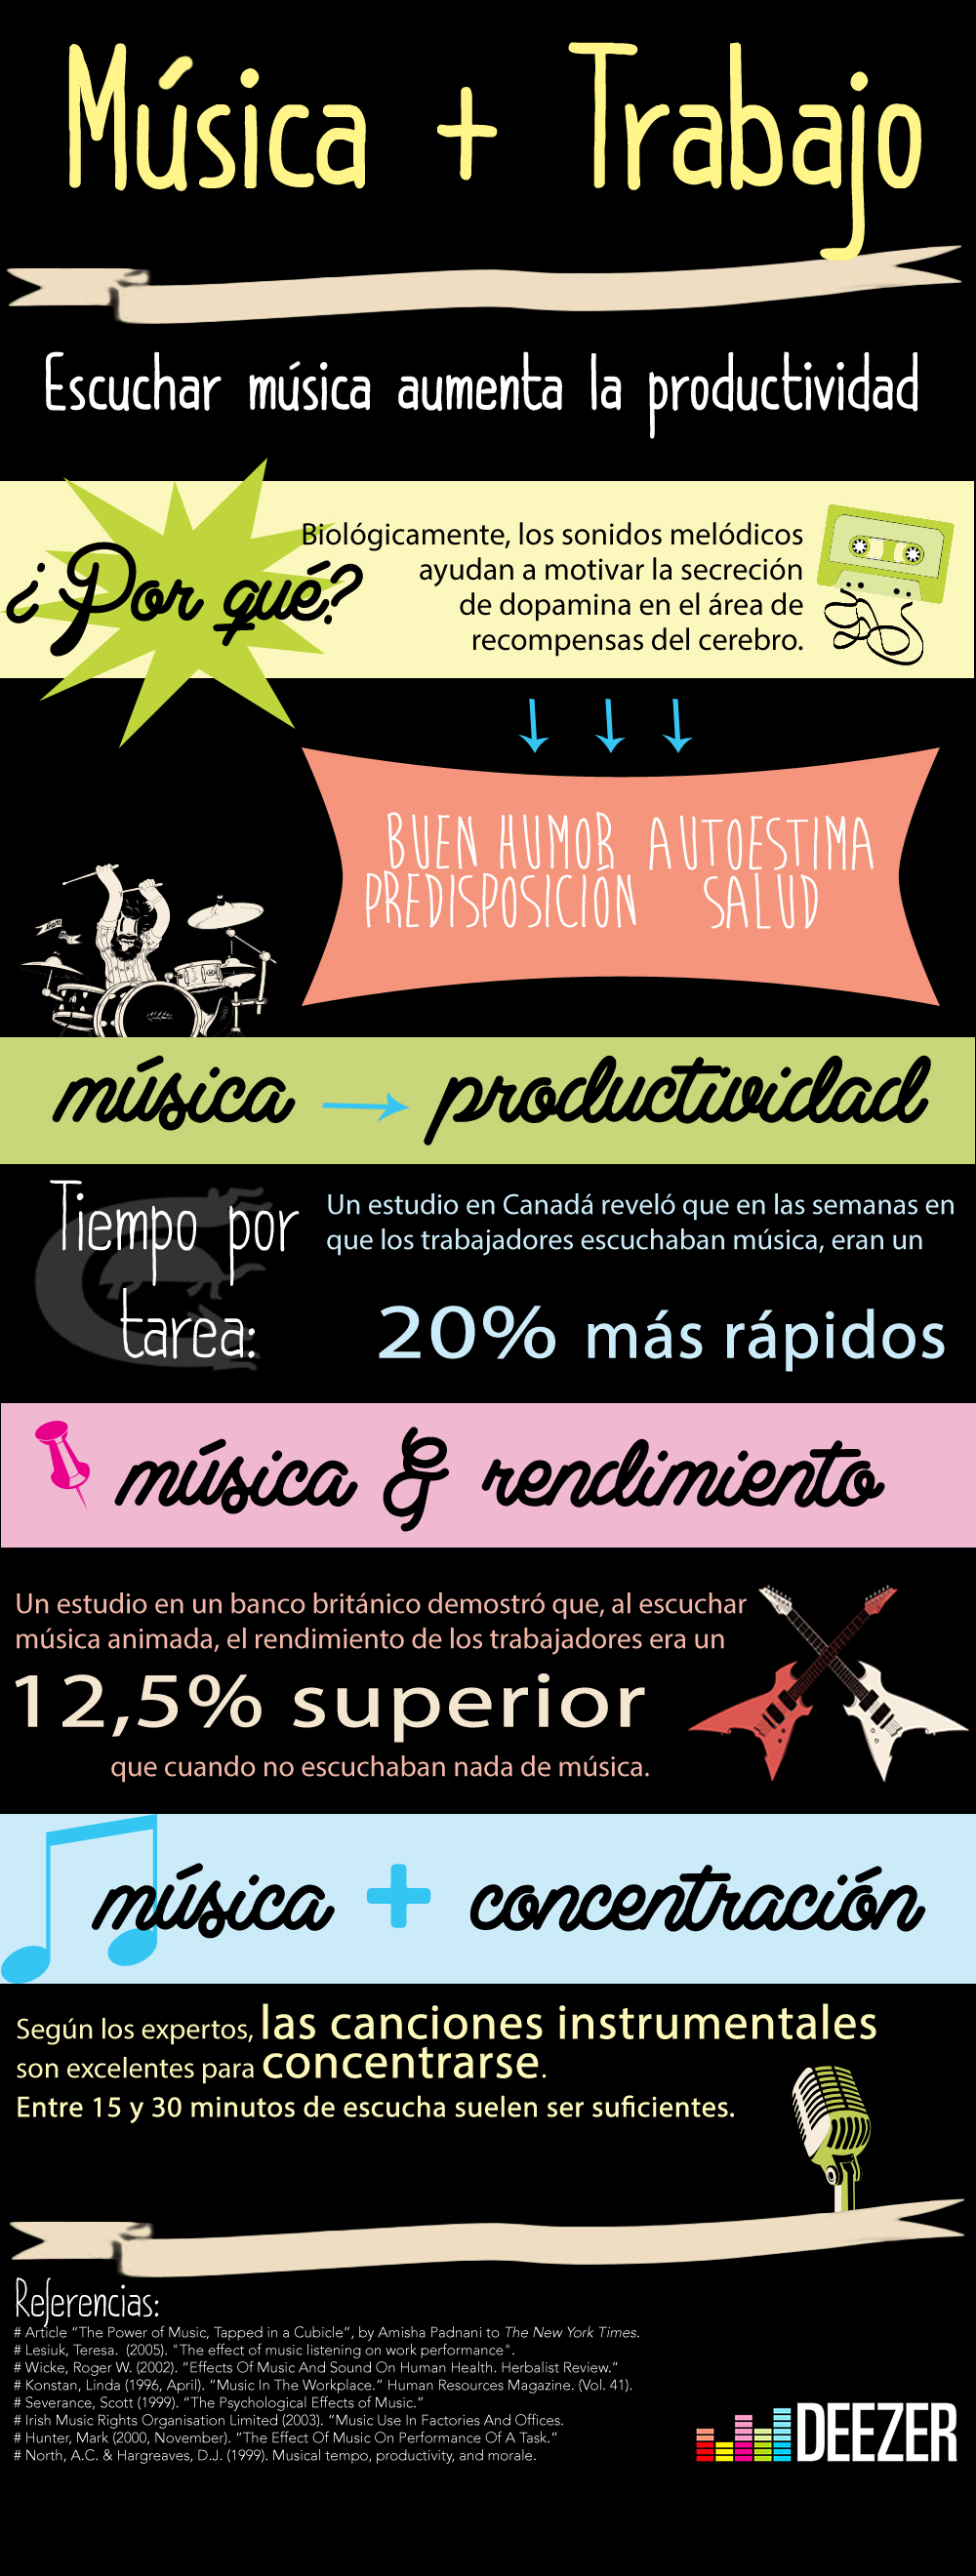 Music at Work infographic SPANISH